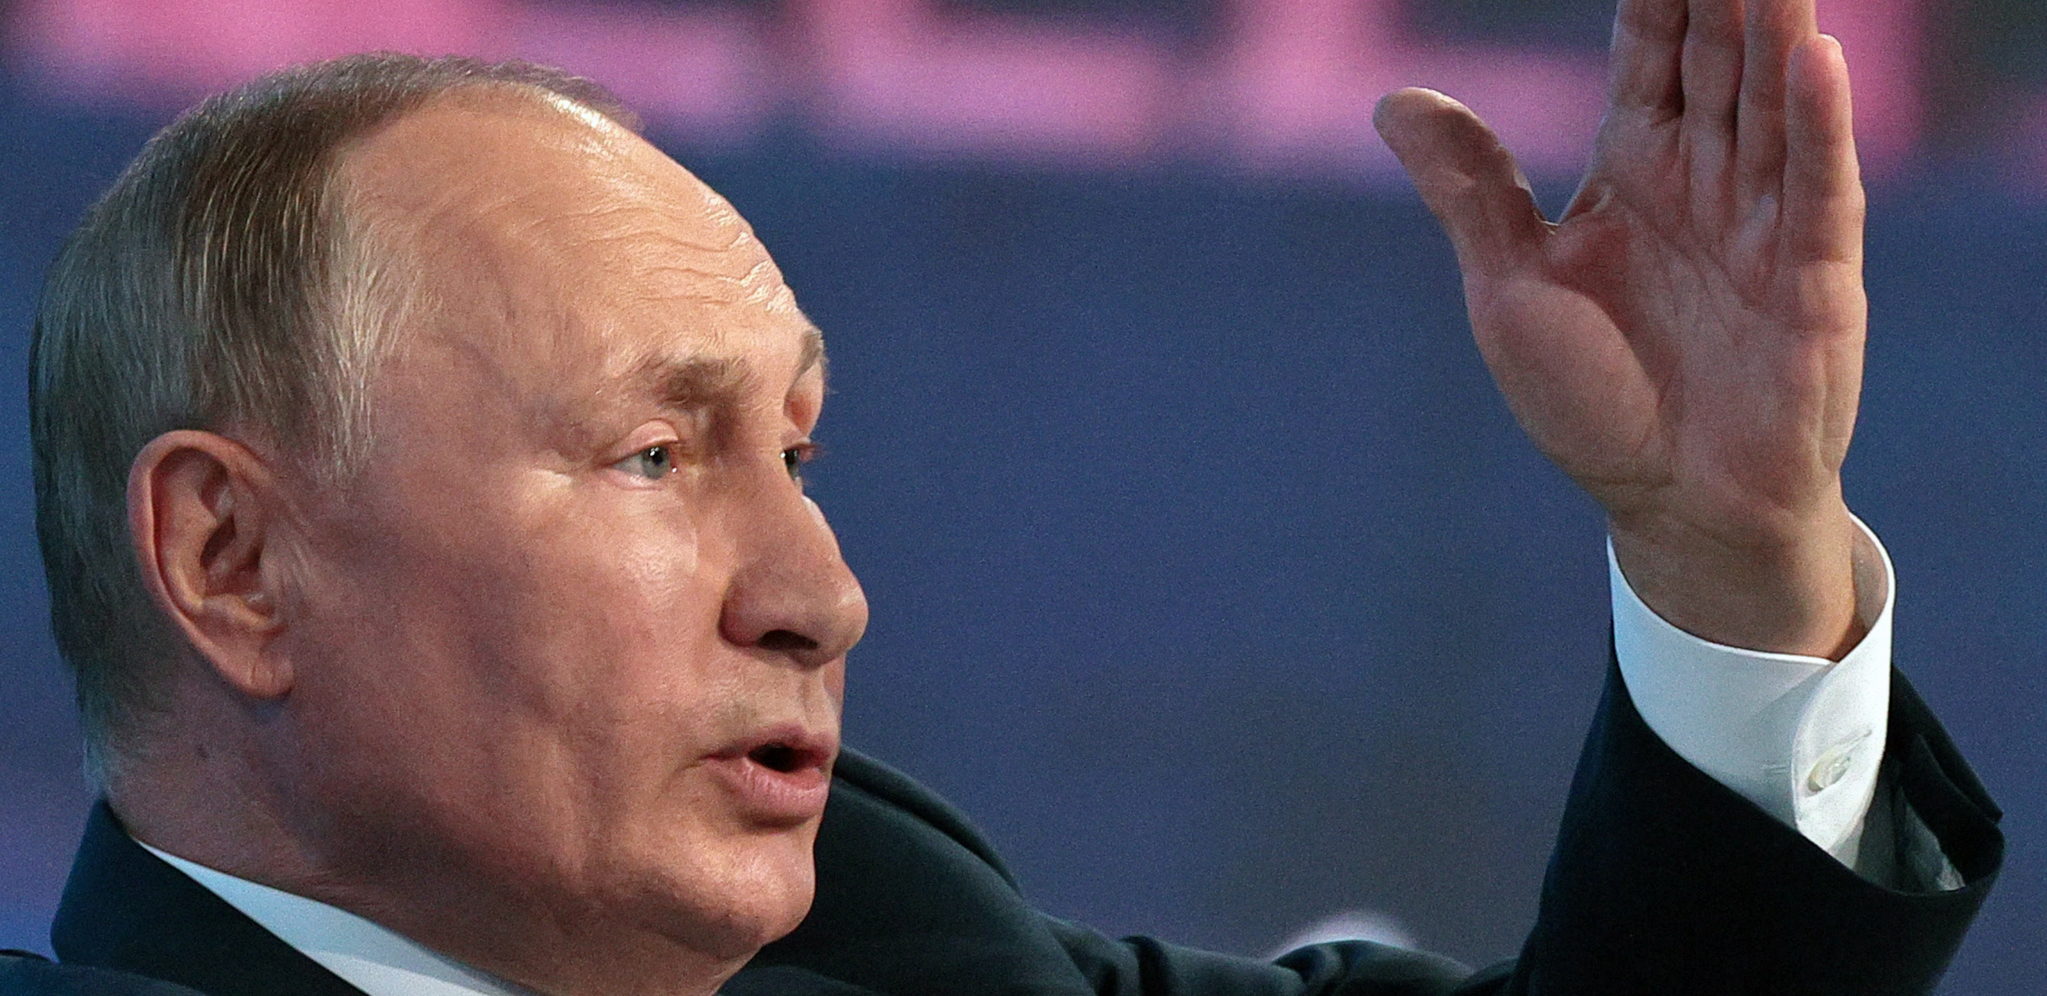 BLIŽE SE DVA VELIKA DANA ZA RUSIJU Očekuje se istorijsko obraćanje Putina